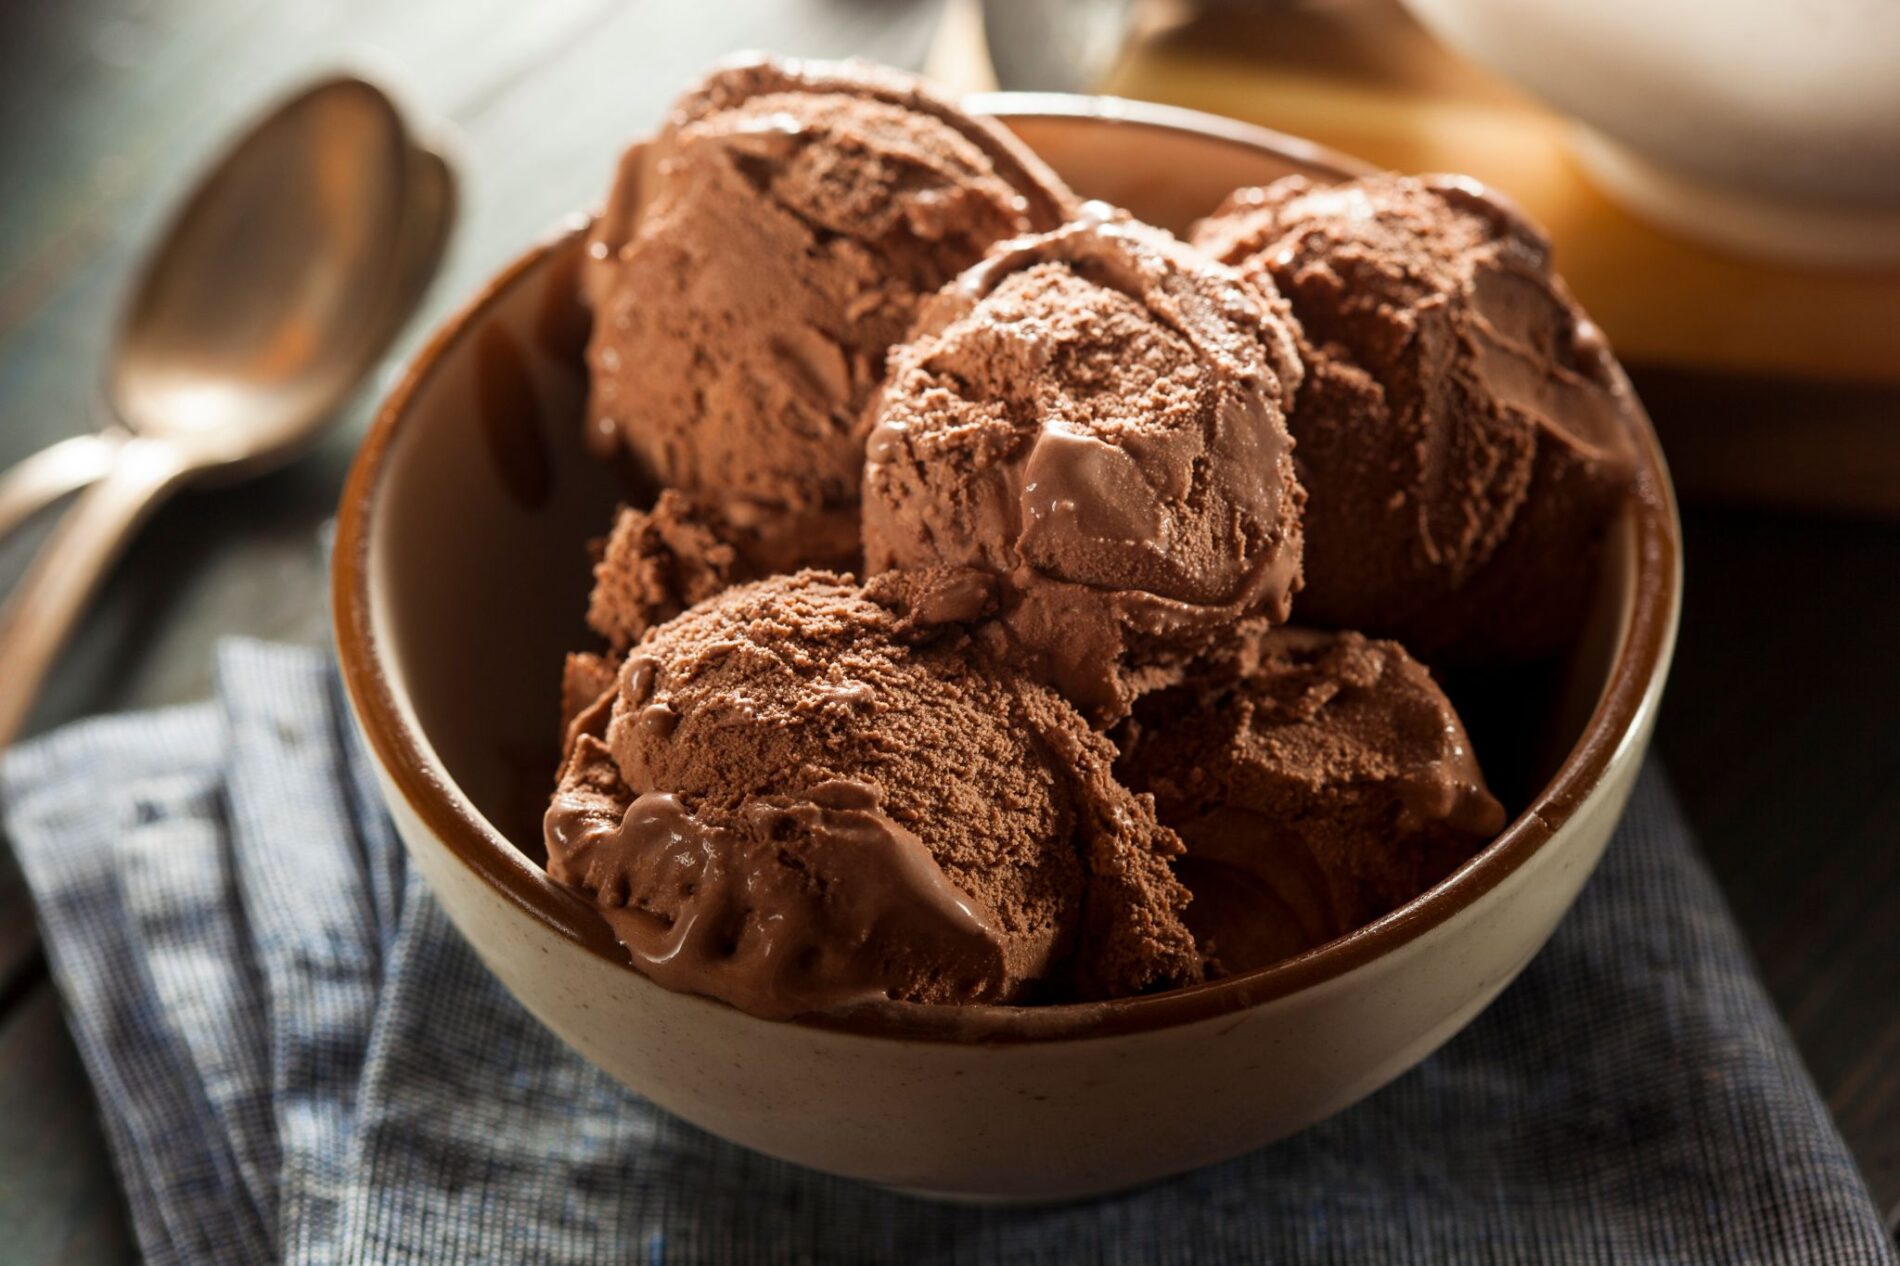 helado proteico casero de chocolate ya terminado